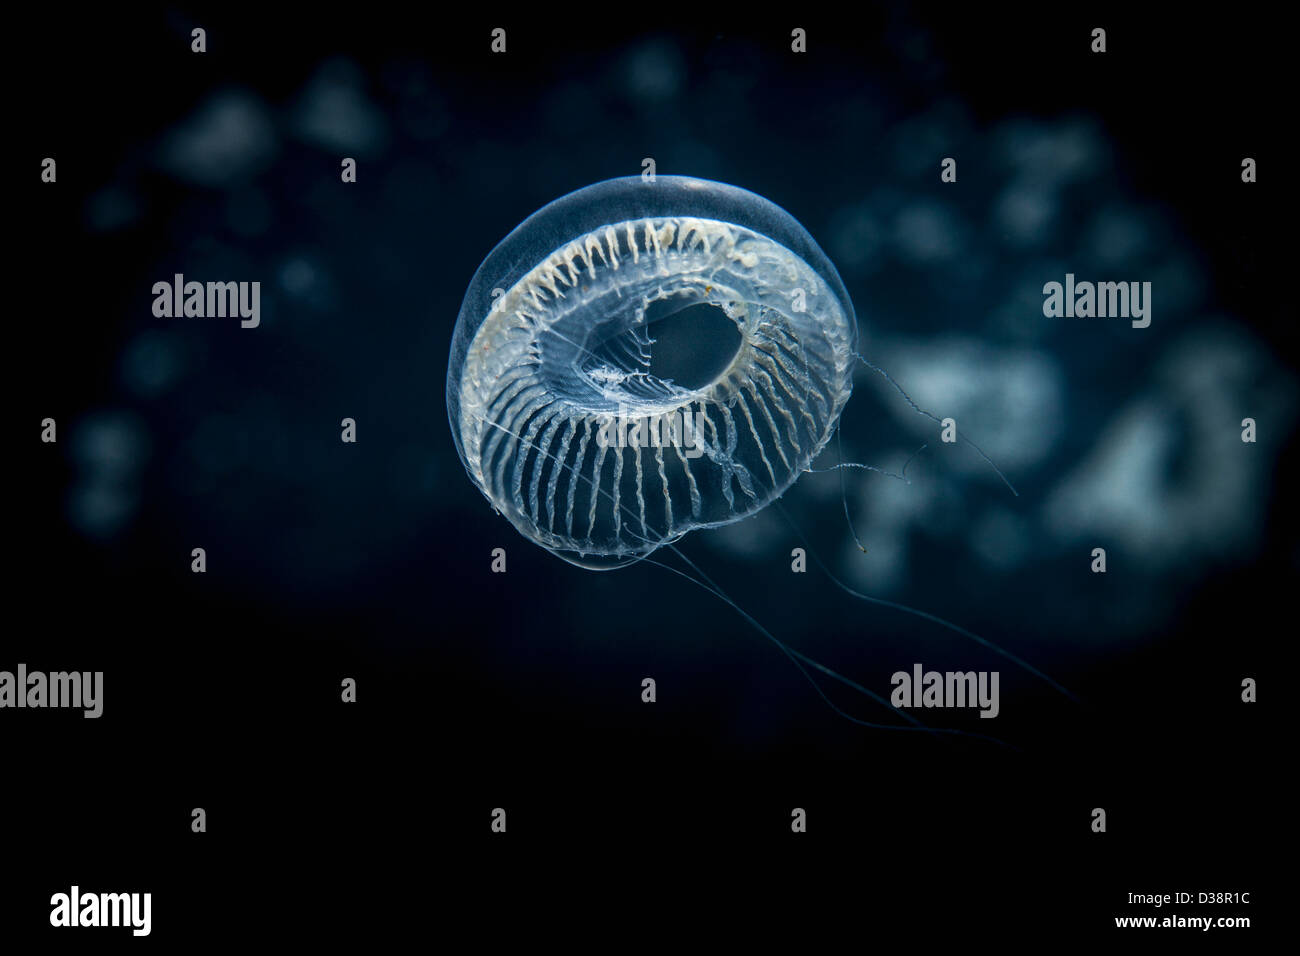 Jellyfish swimming underwater Stock Photo